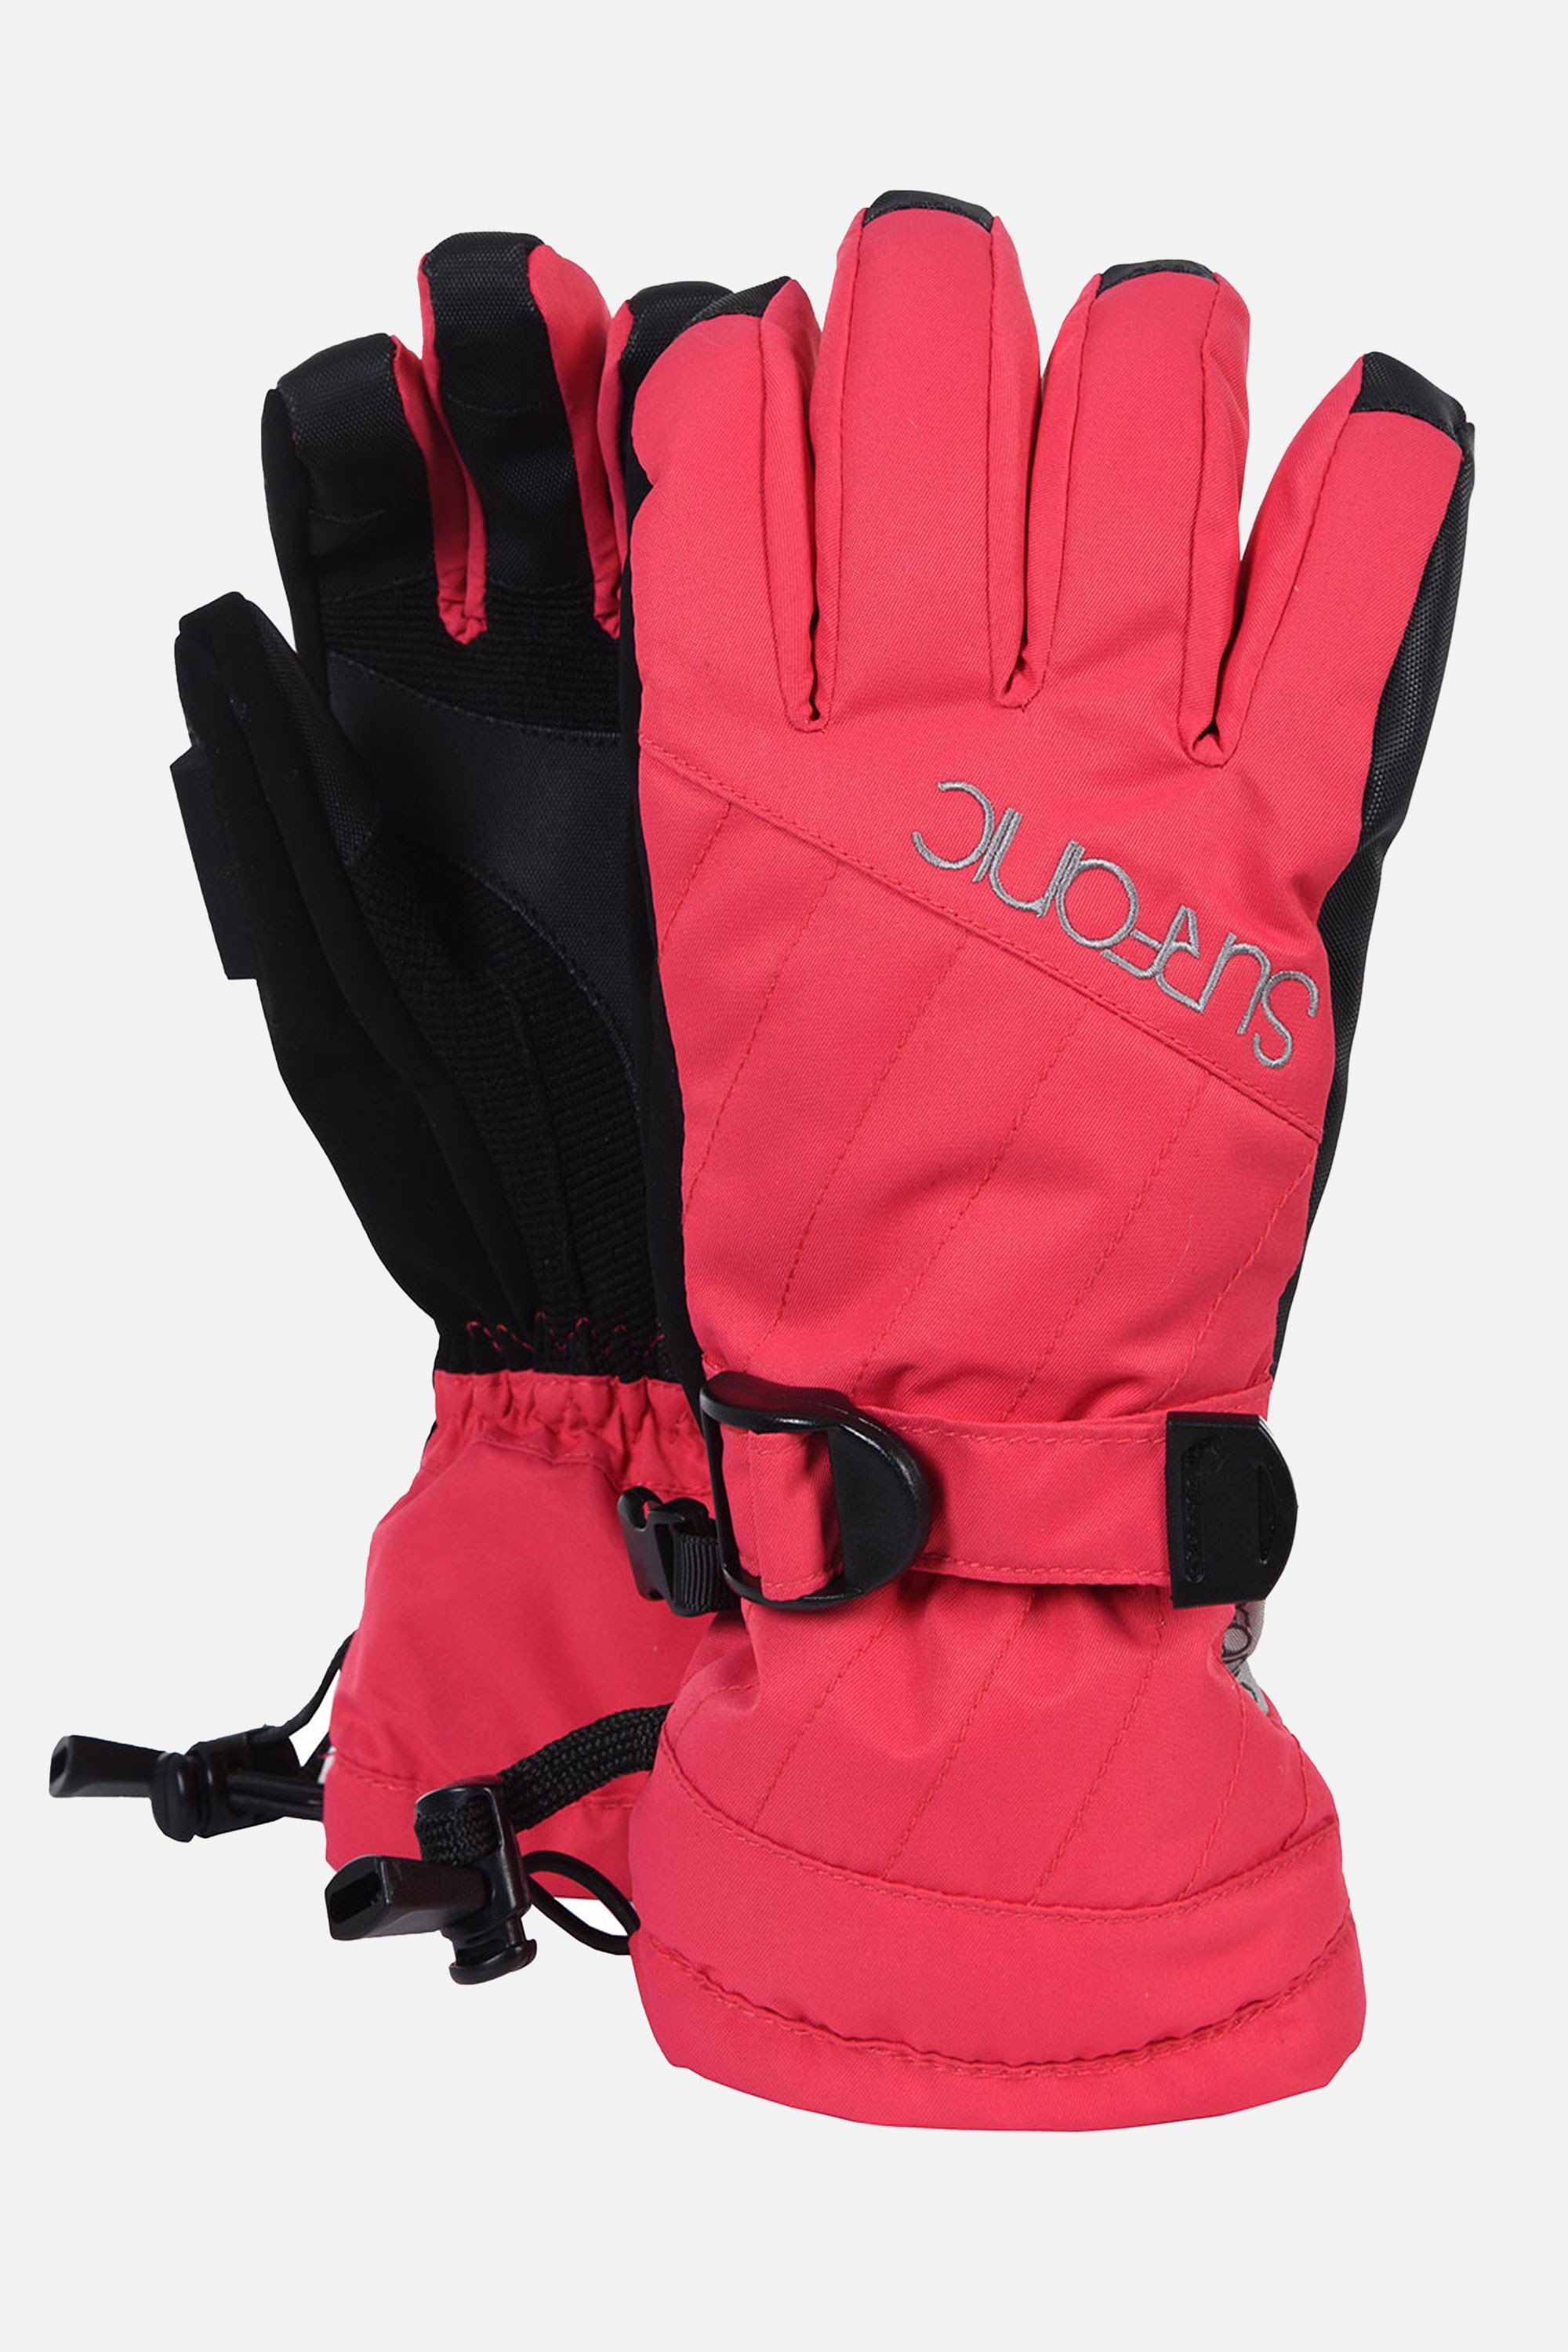 Feeler Surftex Ski Gloves -